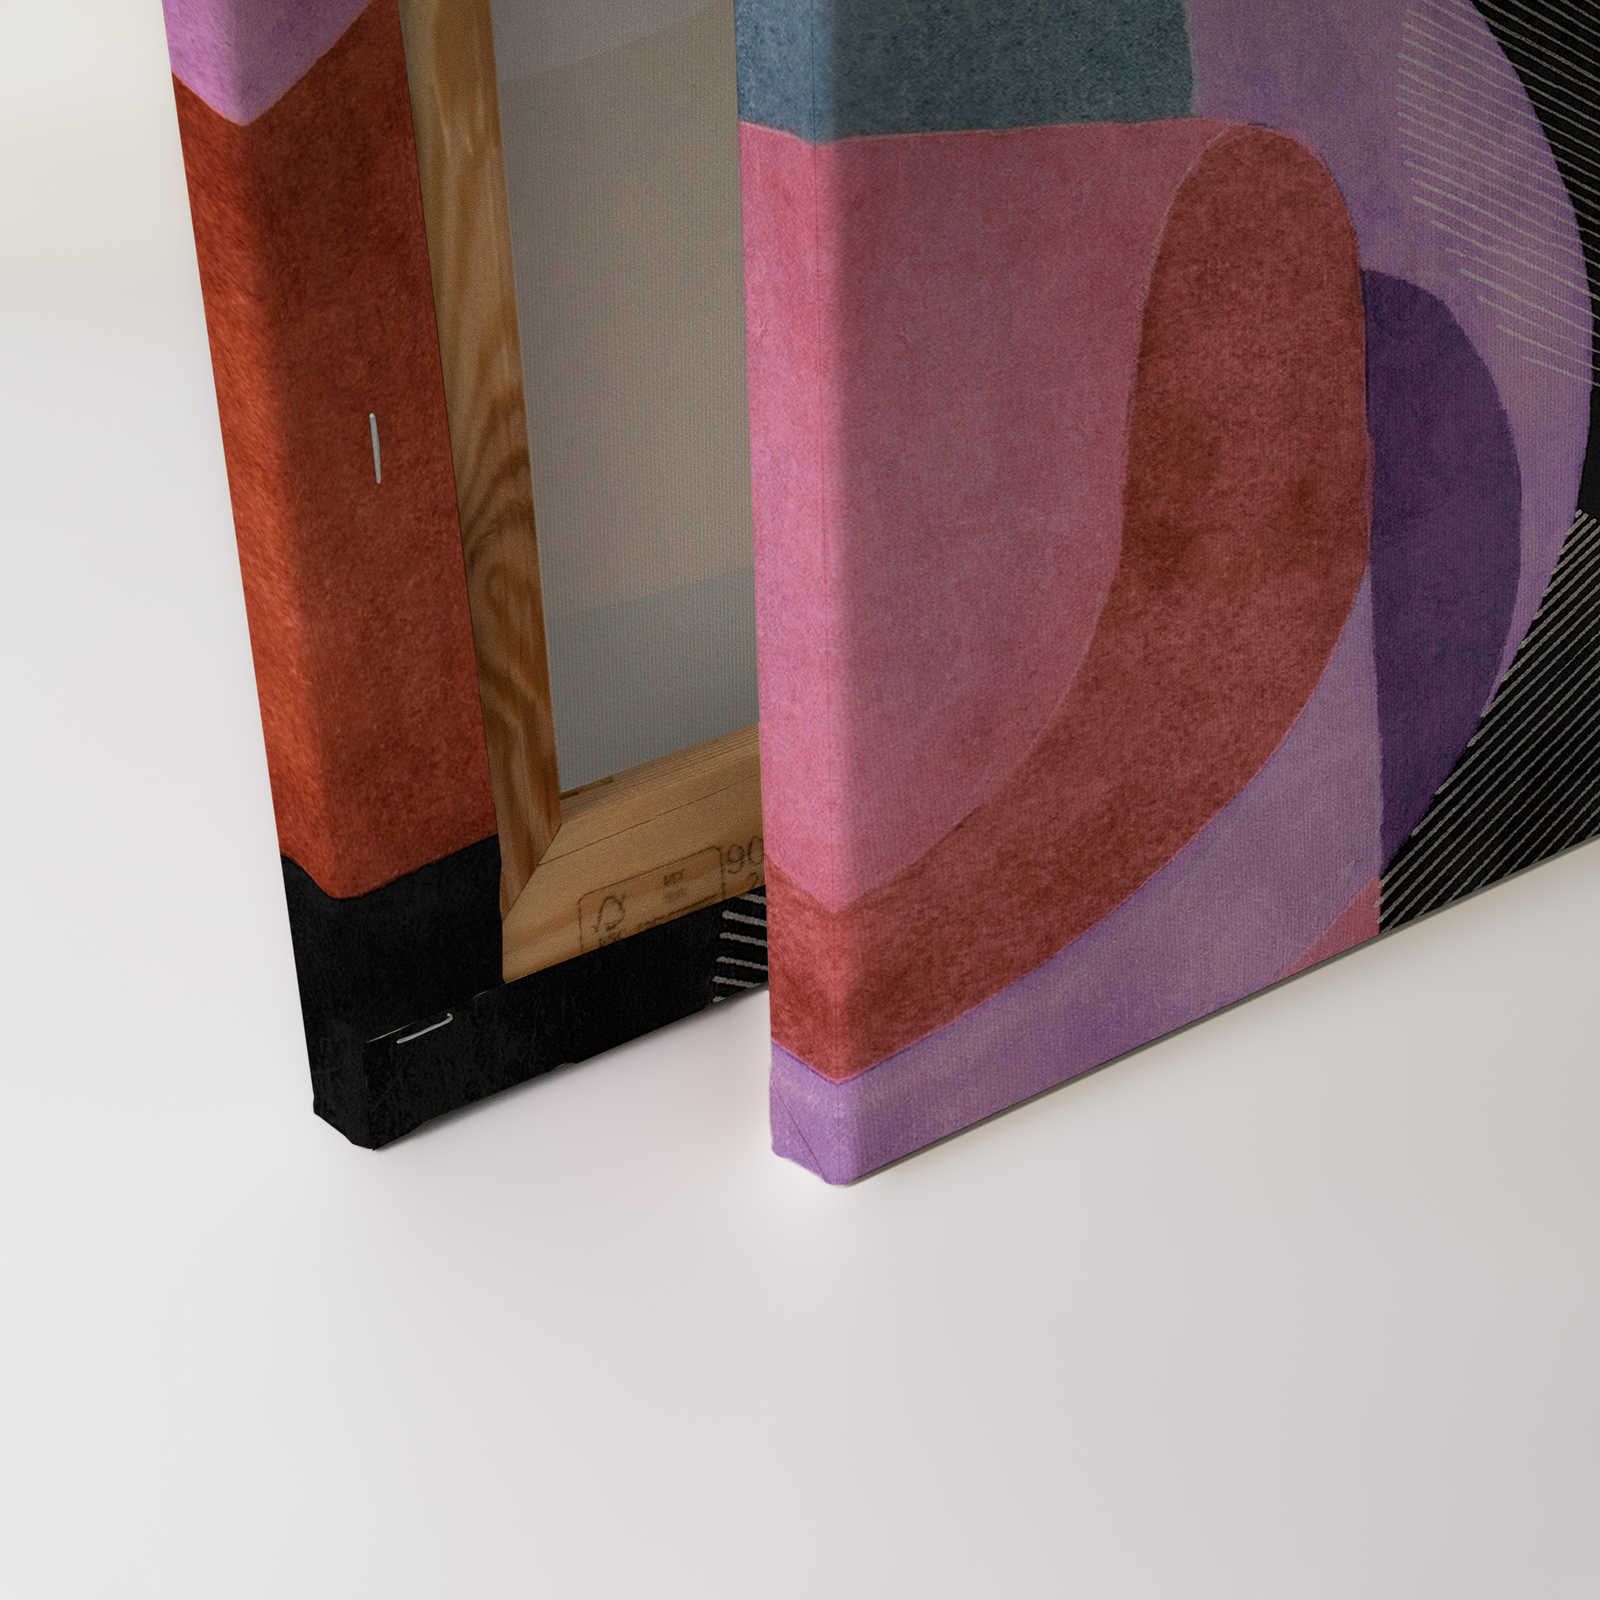             Meeting Place 2 - Quadro su tela con disegno etno astratto in nero e rosa - 0,90 m x 0,60 m
        